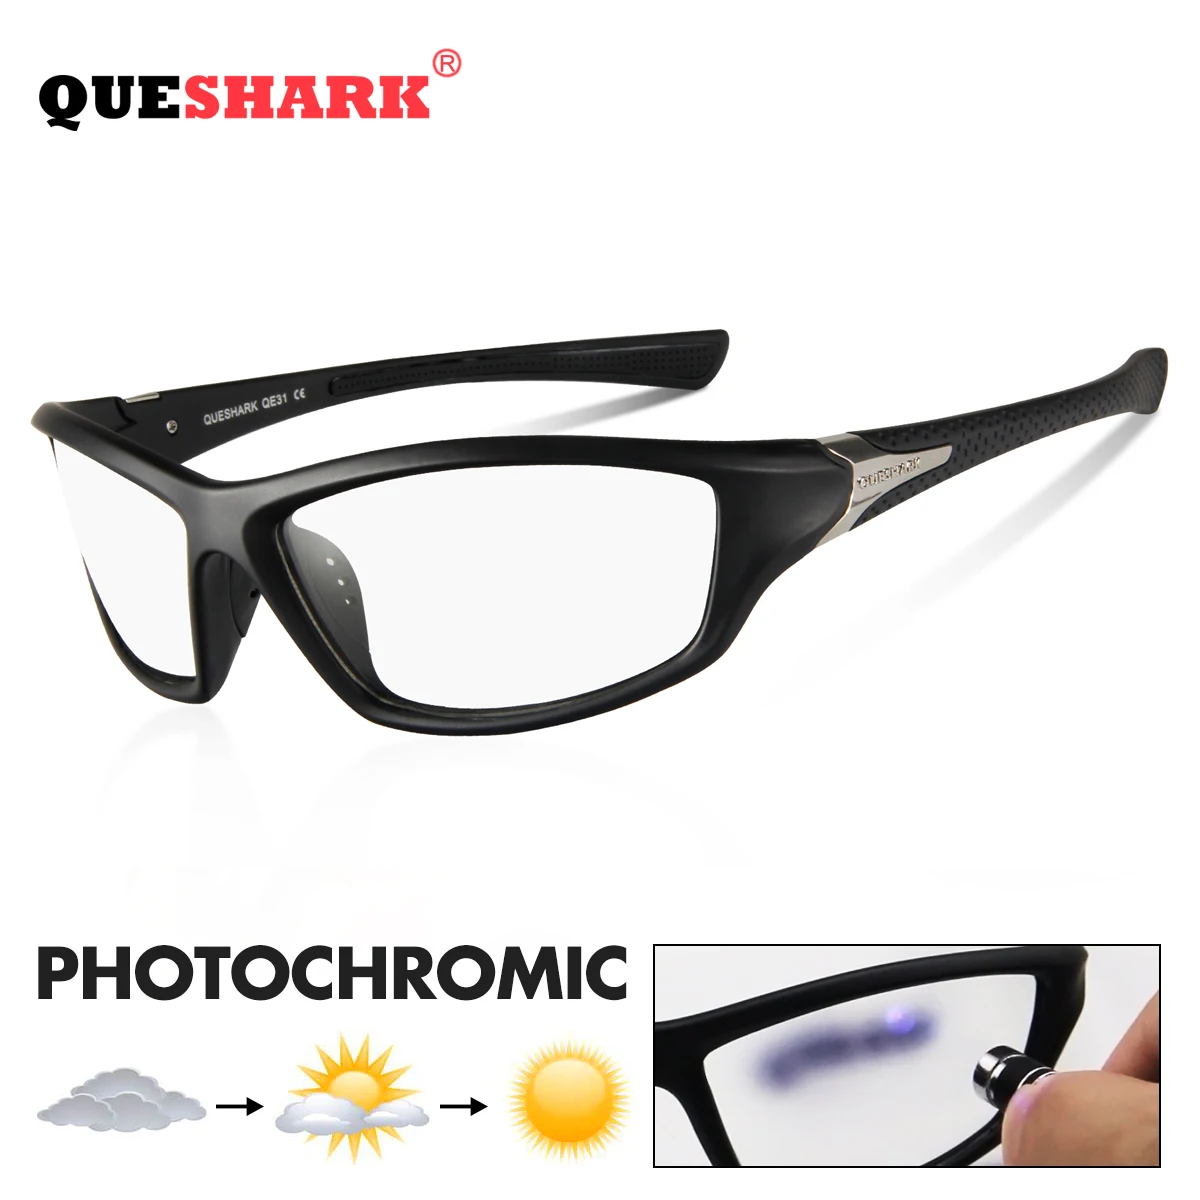 Óculos de Sol dos Homens Óculos de Sol para Homens Óculos de Condução Óculos de Pesca Queshark Esporte Photochromic Camaleão Descoloração Anti reflexo